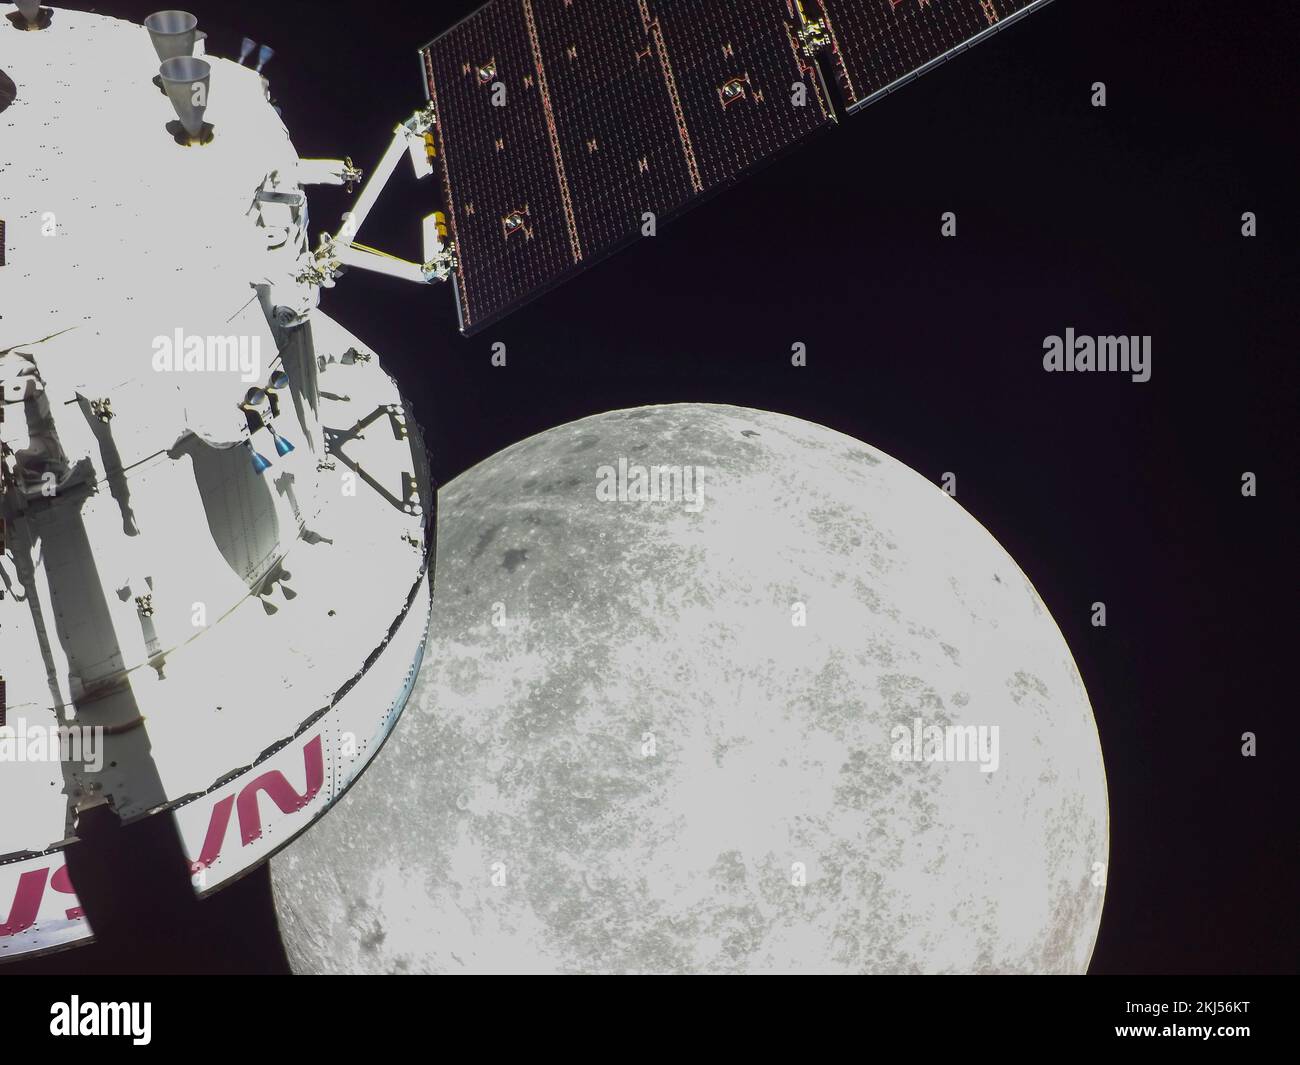 Orbite de la terre, orbite de la terre. 21 novembre 2022. Selfie de la capsule d'équipage Orion lors de l'approche la plus proche de la Lune en bas à droite comme il se positionne pour un survol lunaire, le sixième jour de vol de la mission Artemis I de la NASA, 21 novembre 2022, dans l'orbite de la Terre. L'image a été capturée par une caméra à l'extrémité d'un des panneaux solaires lorsqu'elle s'approchait de la lune. Credit: NASA/NASA/Alamy Live News Banque D'Images